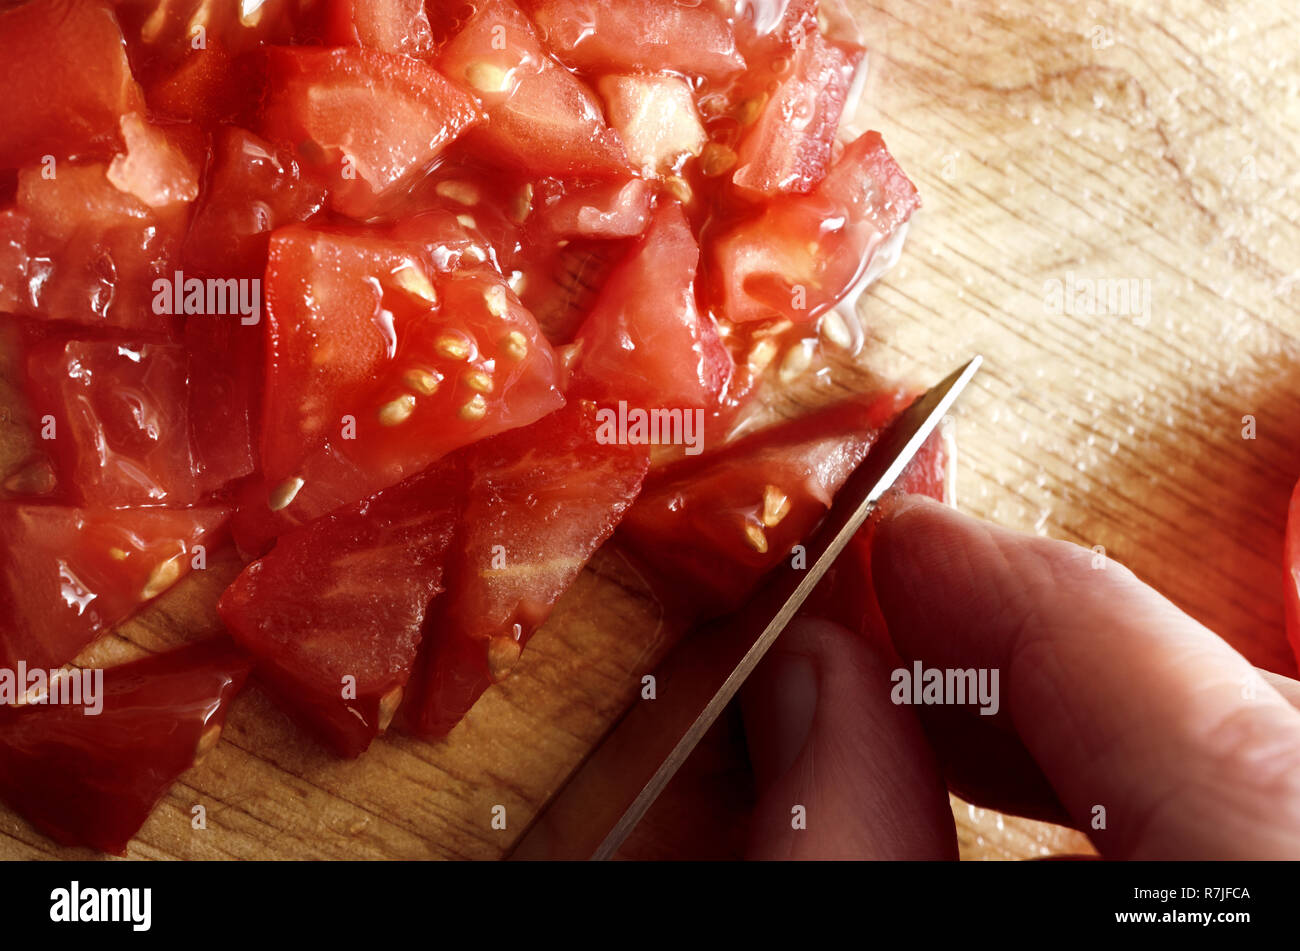 Fotografía cenital de la mano que sujeta la cuchilla para picar y cortar jugoso, rojo tomate ensalada cruda sobre una tabla de cortar de madera. Foto de stock